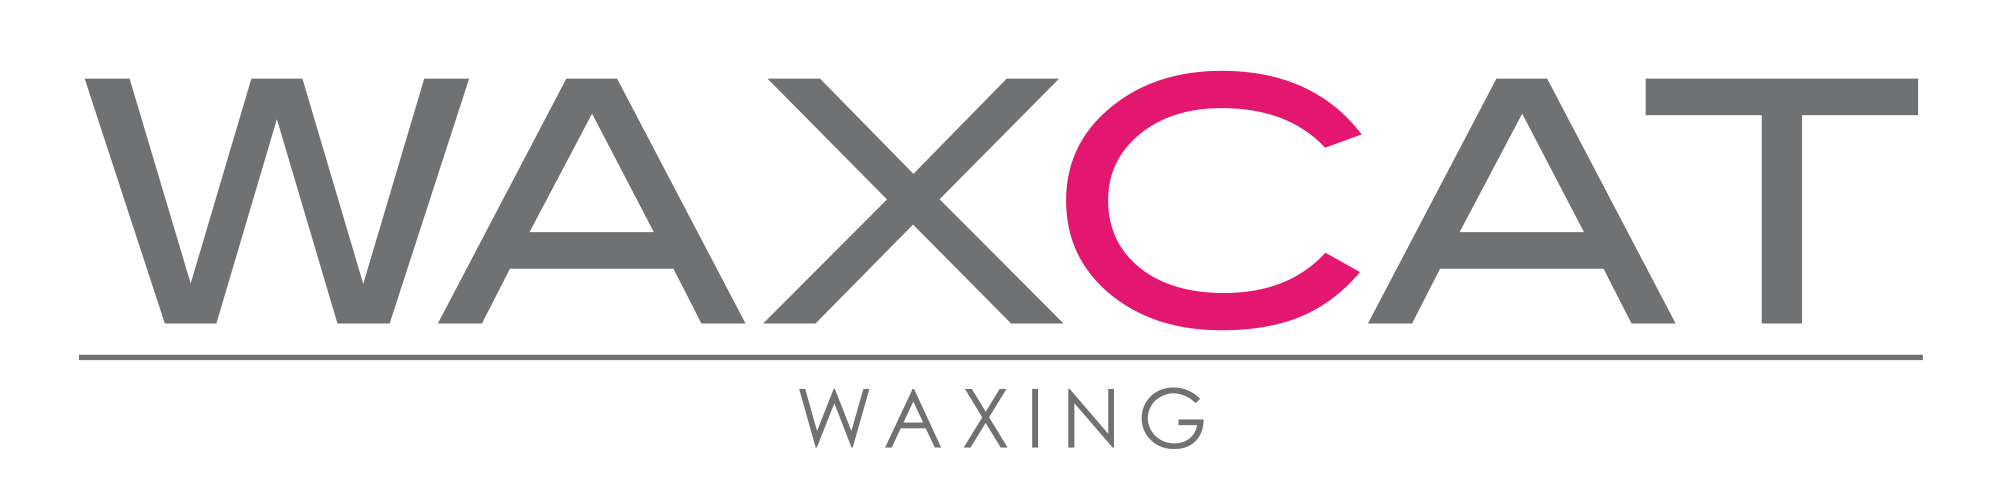 Logo von Waxcat Gmbh 